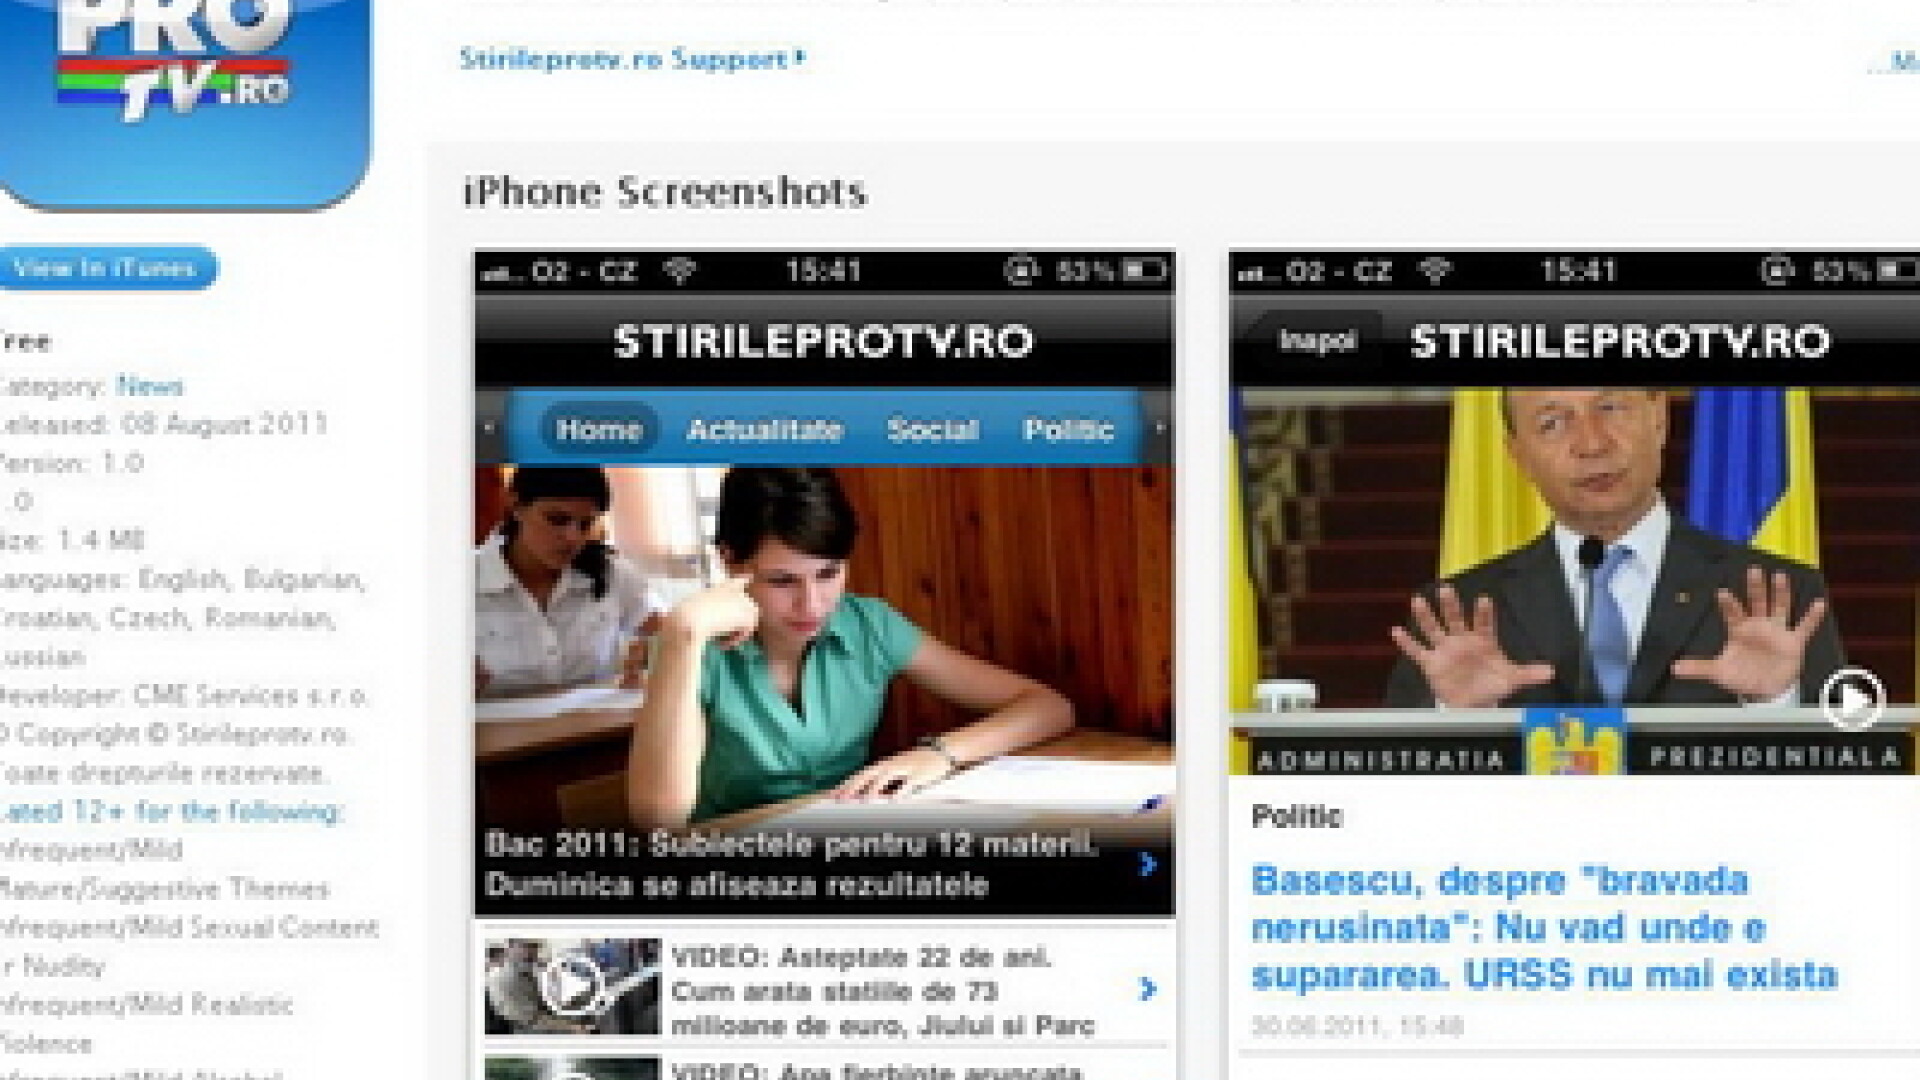 Aplicatie iPhone Stirileprotv.ro